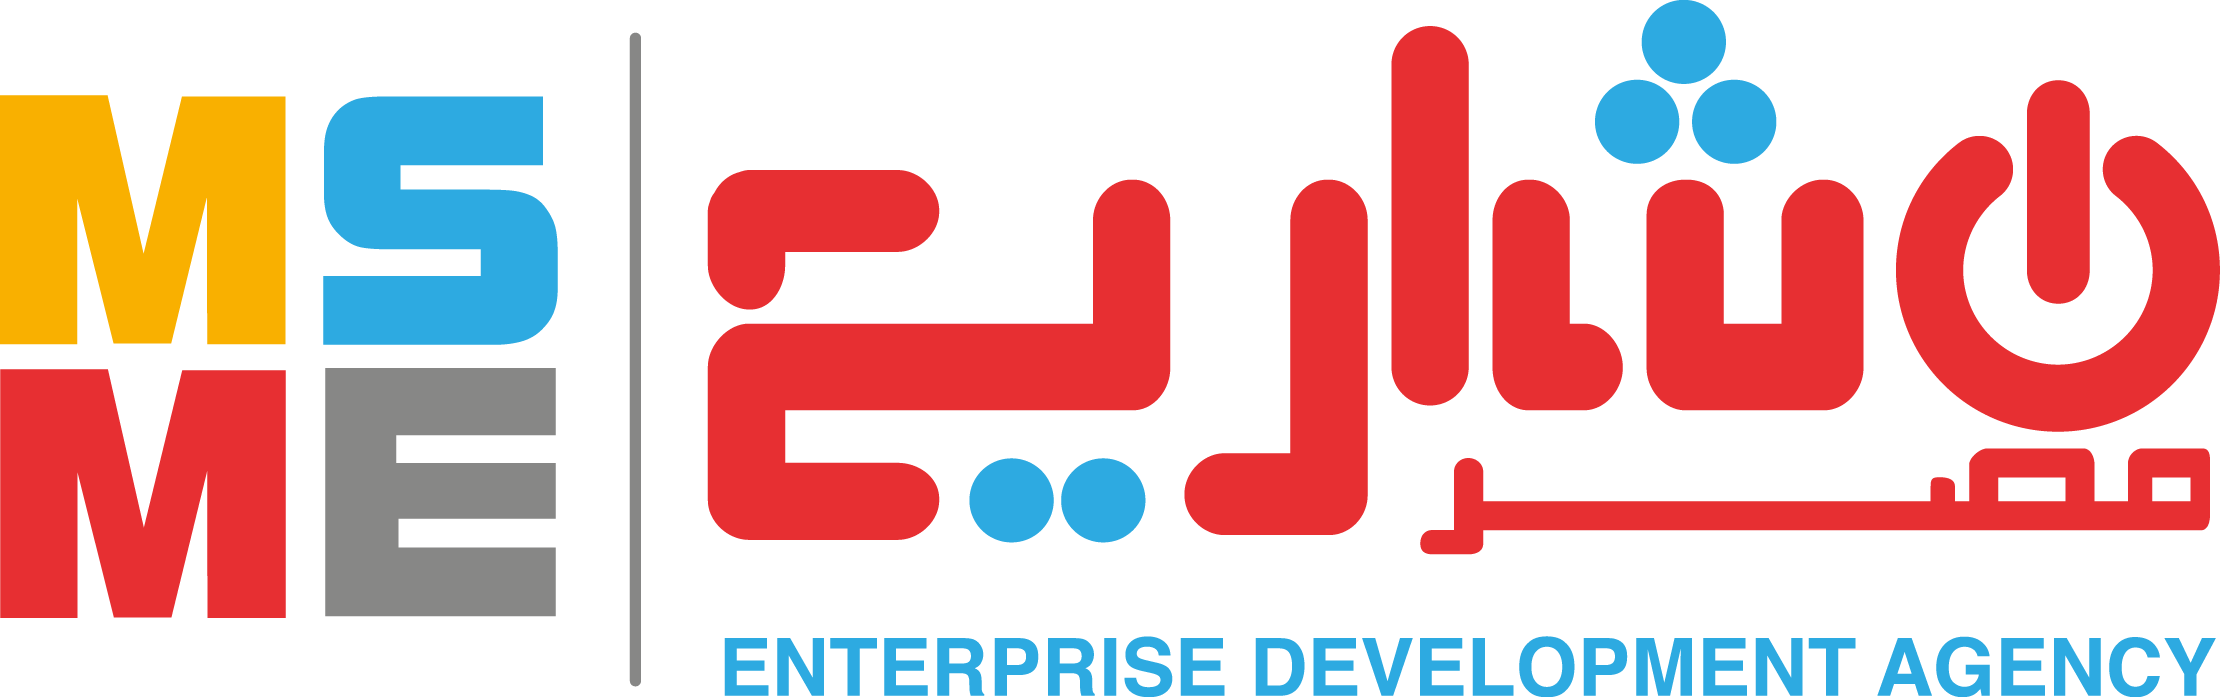 MSME-Logo-Eng (1)